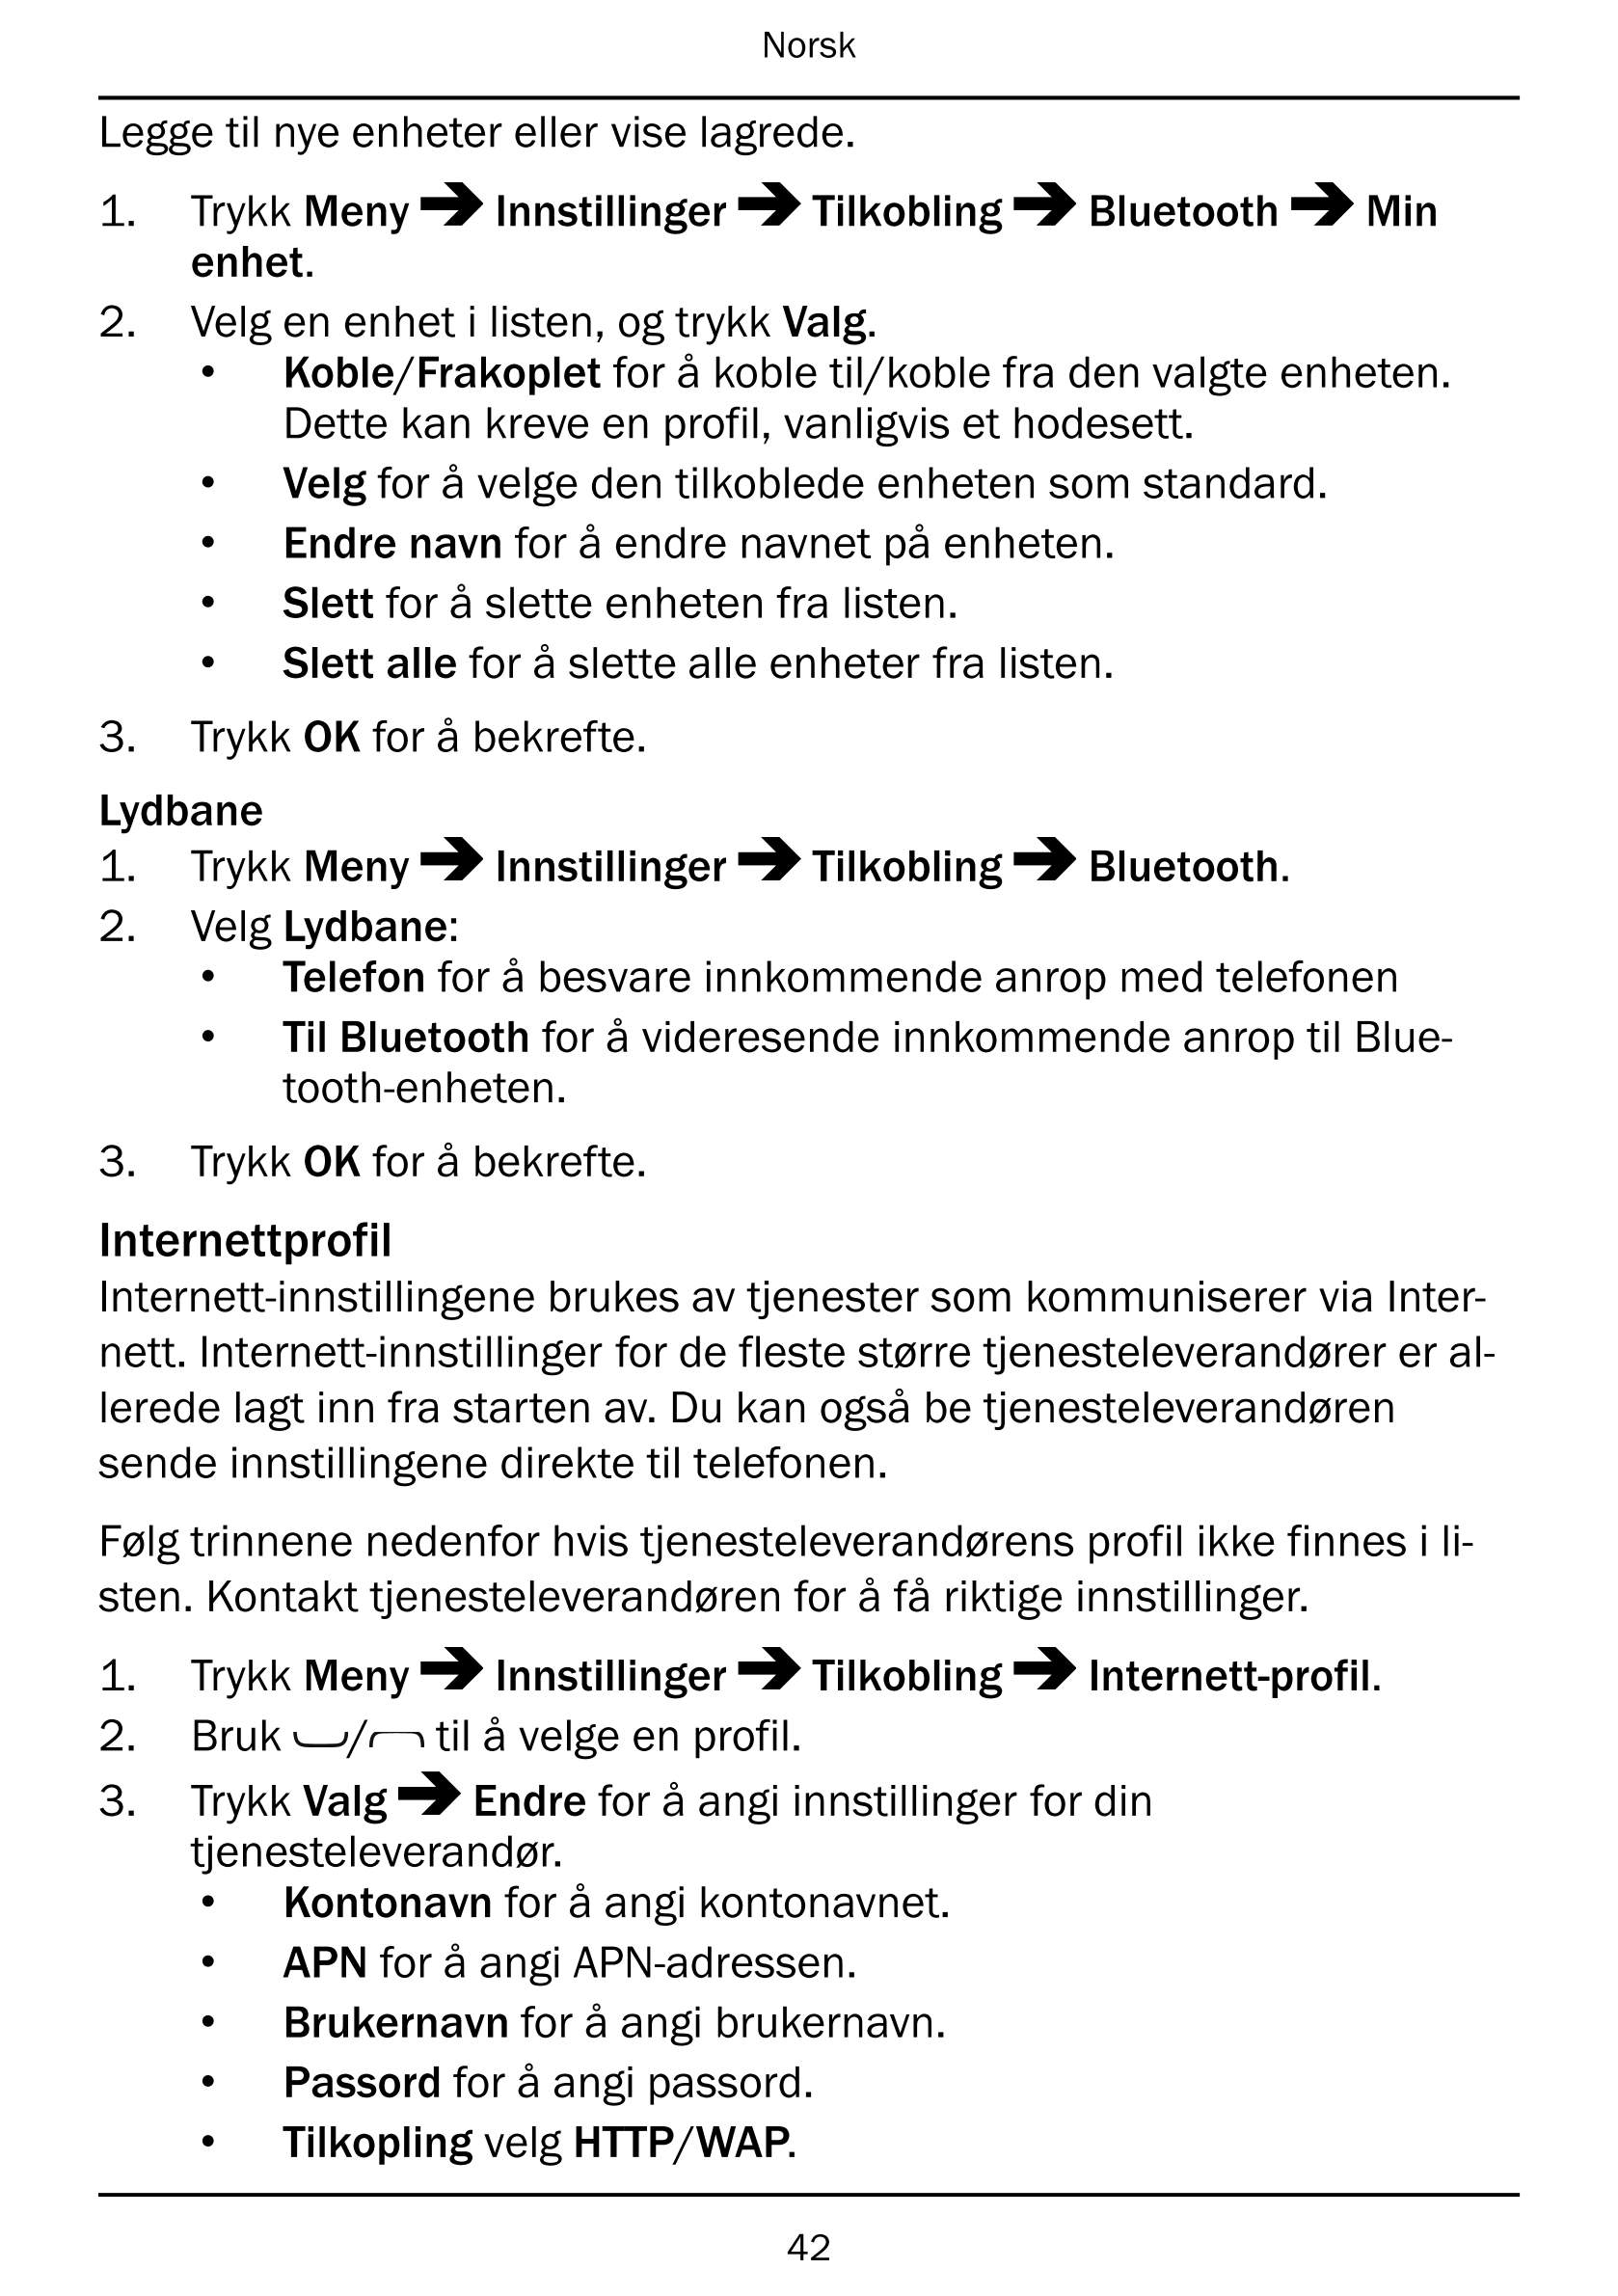 Norsk
Legge til nye enheter eller vise lagrede.
1.     Trykk Meny Innstillinger Tilkobling Bluetooth Min
enhet.
2.     Velg en e